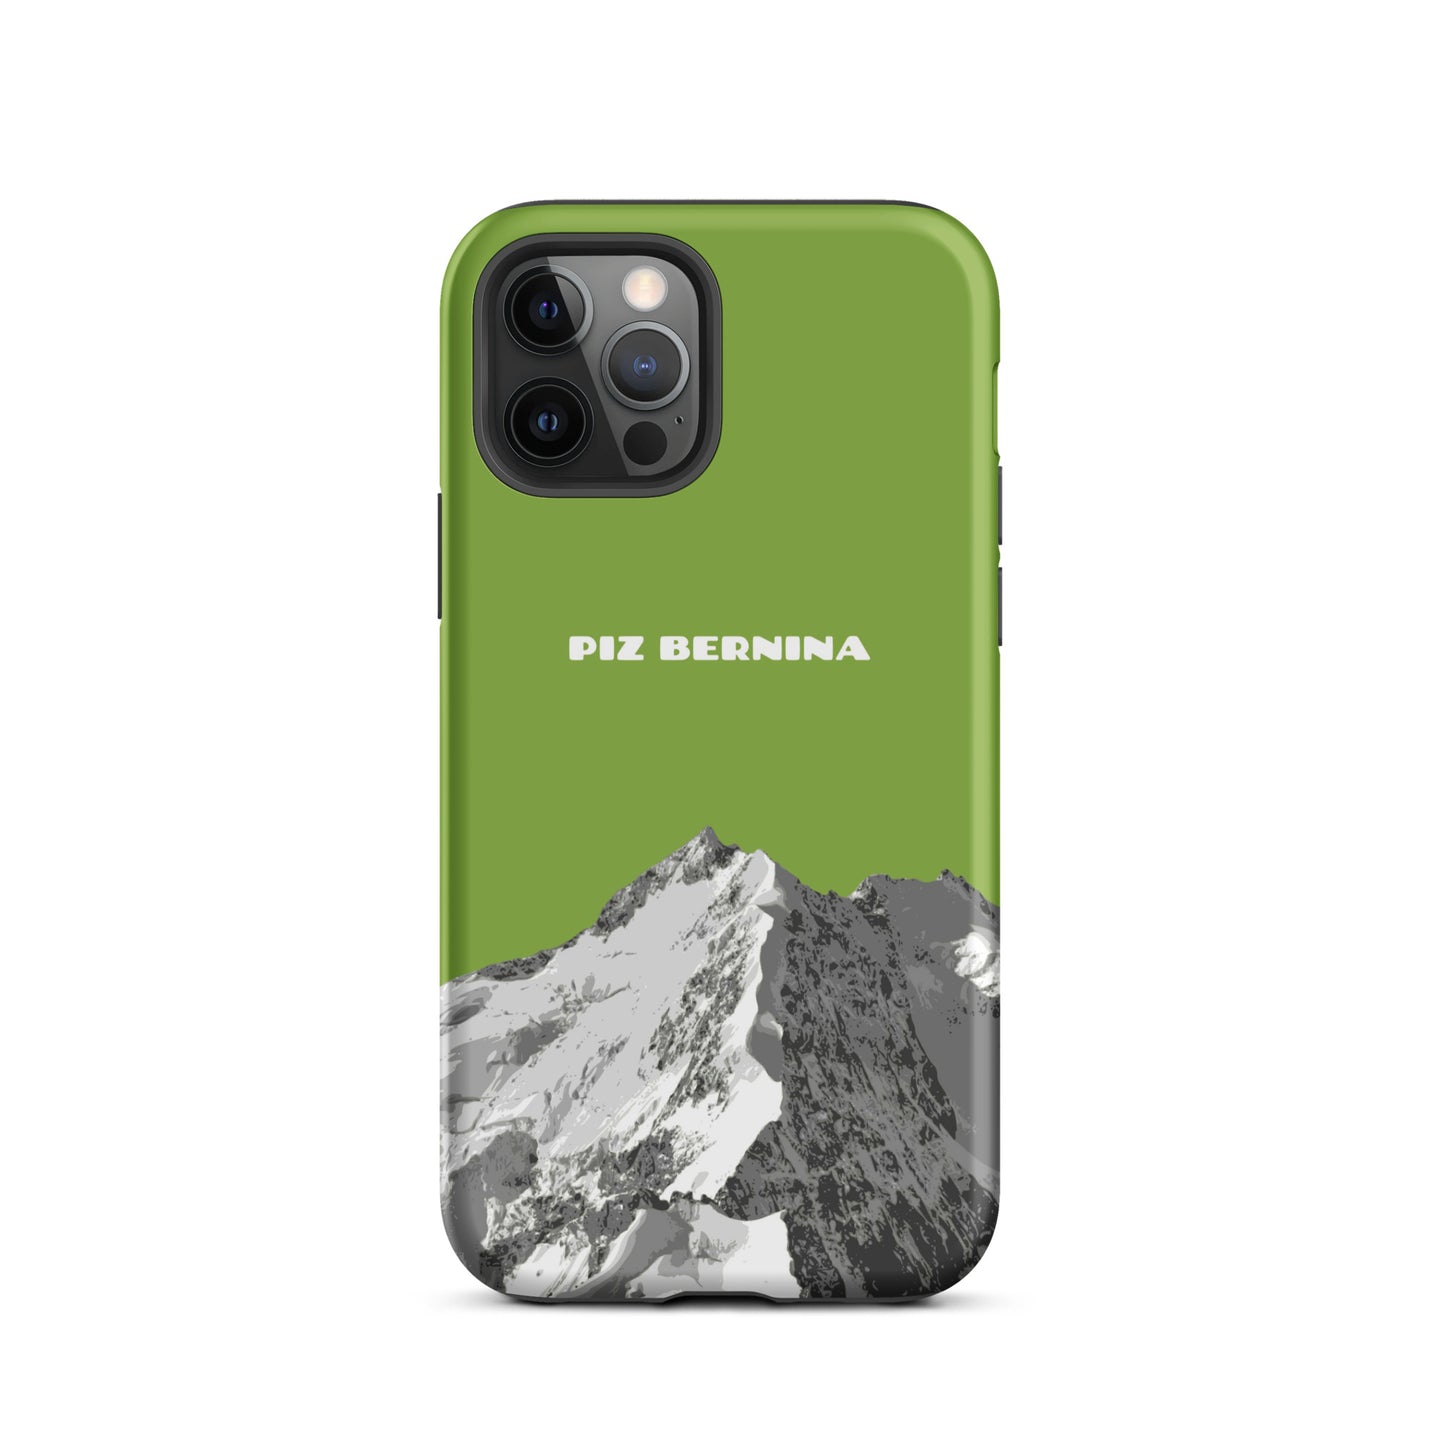 Hülle für das iPhone 12 Pro von Apple in der Farbe Gelbgrün, dass den Piz Bernina in Graubünden zeigt.